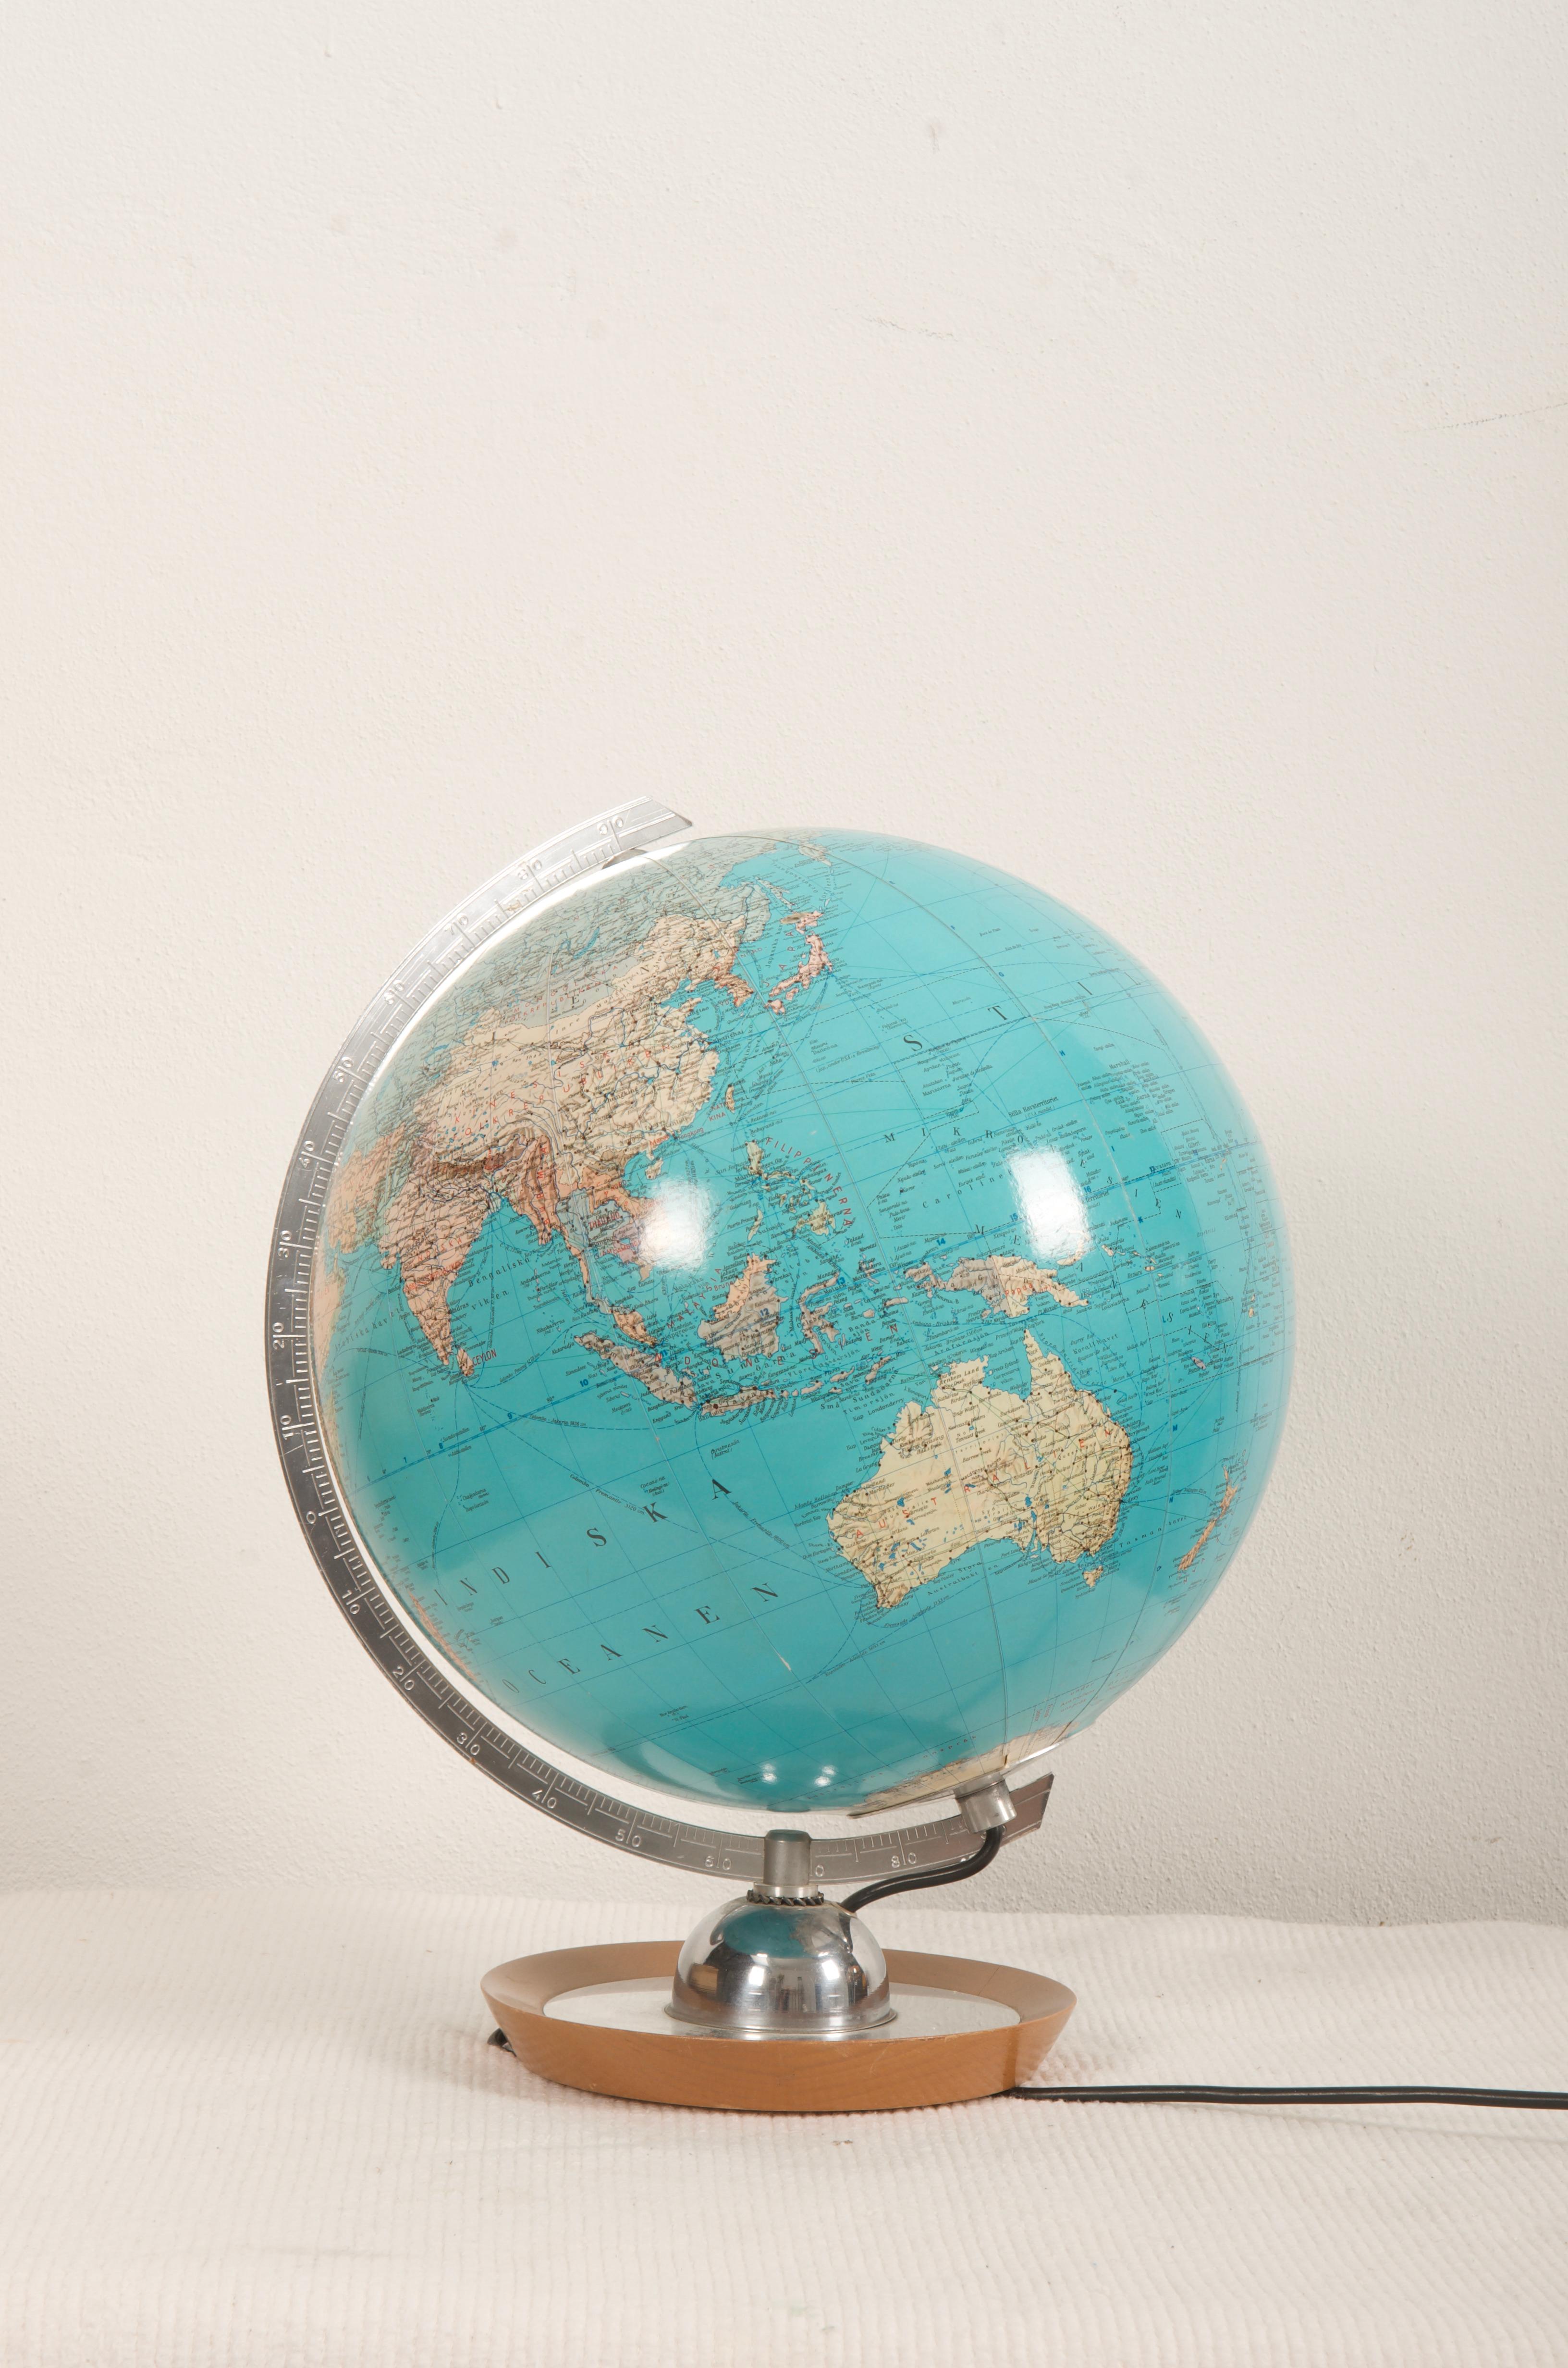 Globe allemand vers 1960 imprimé par JRO Globus Munchen, style Bauhaus
Equipé d'une douille E27 des années 1960.
  